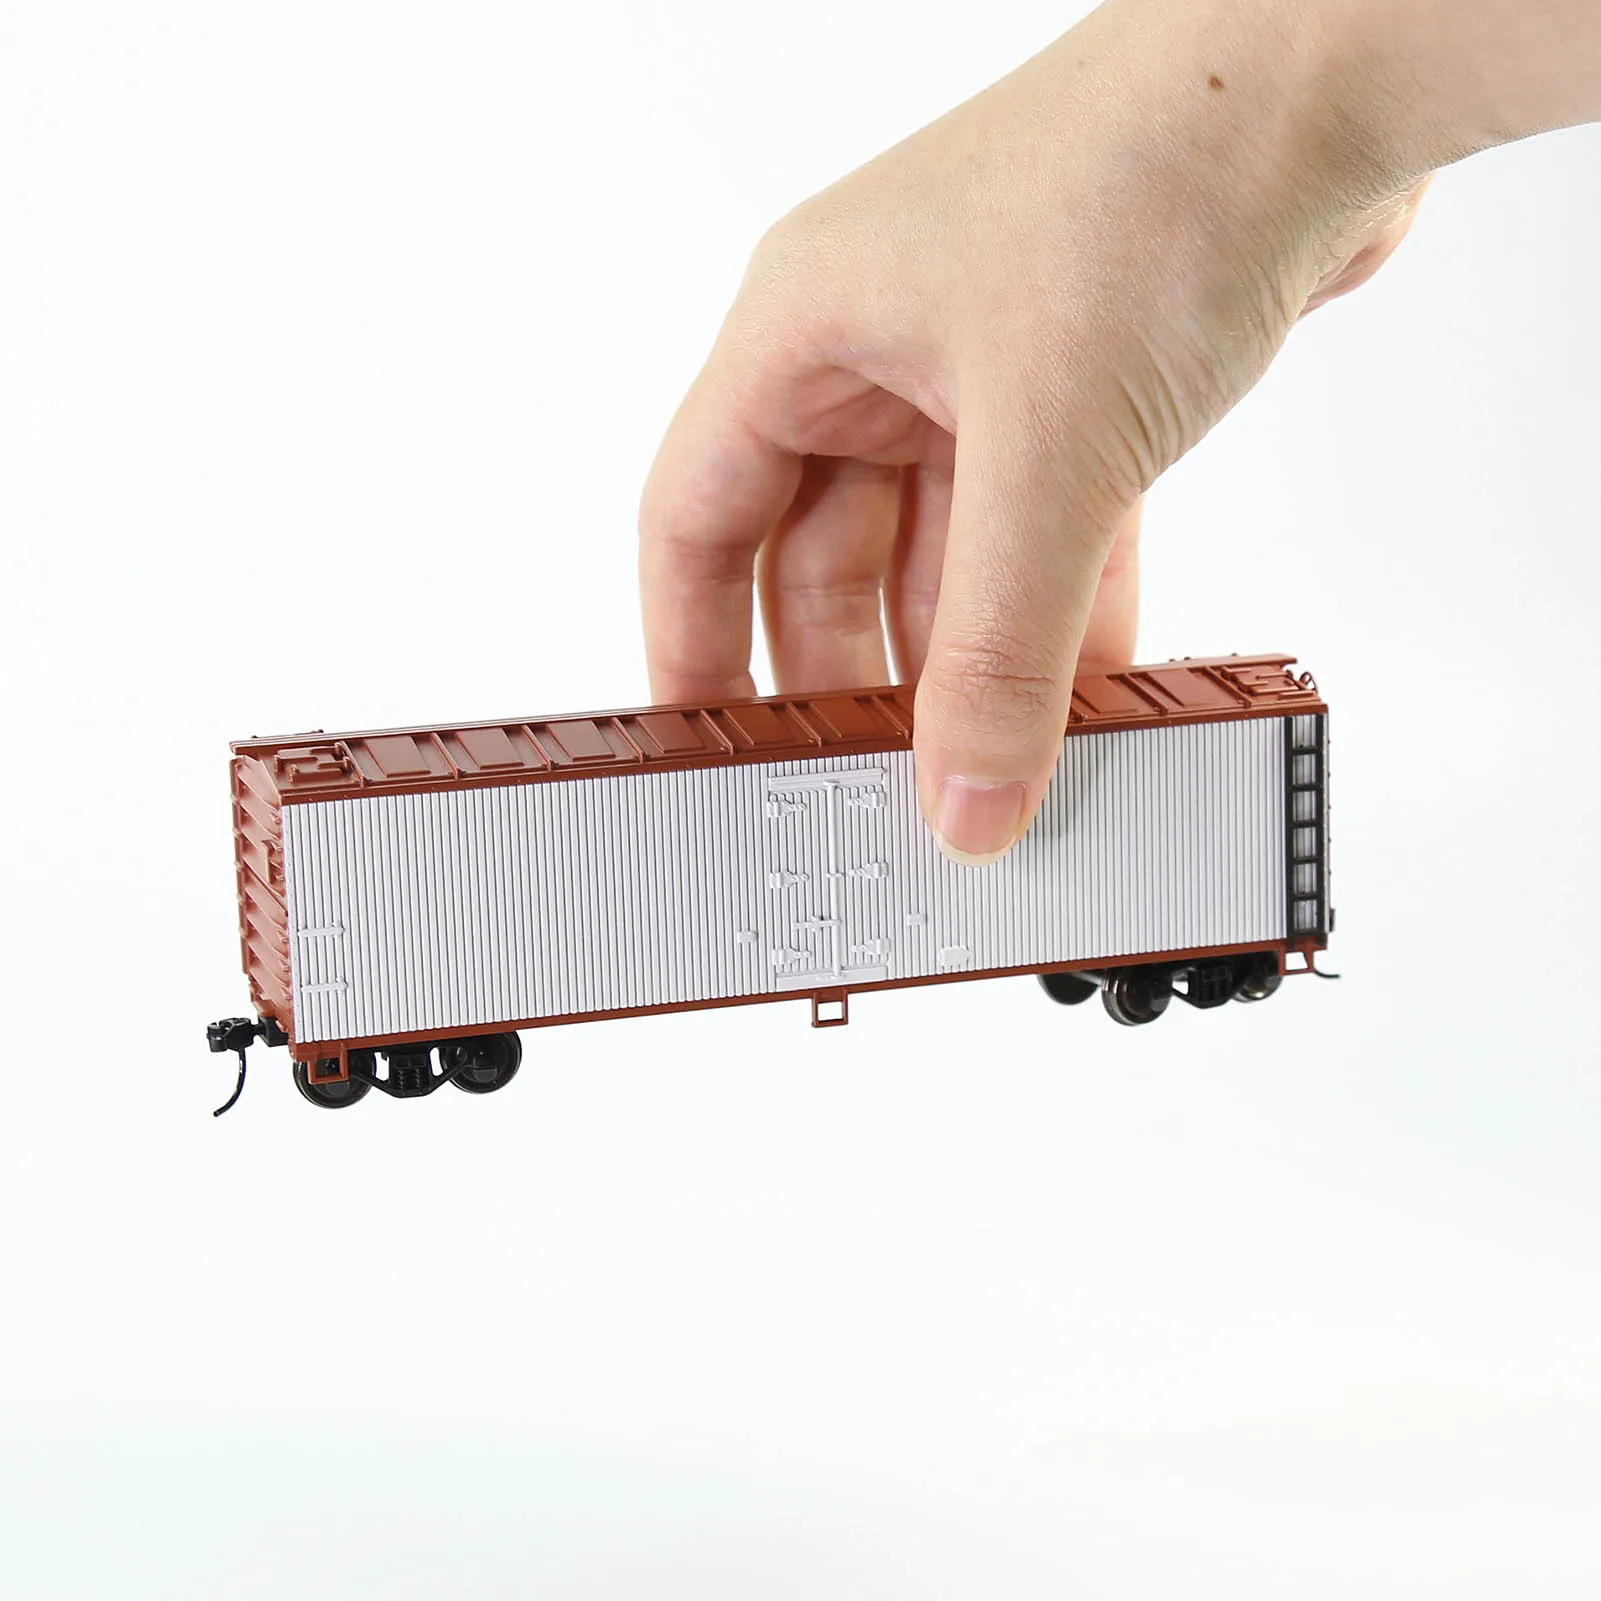 Модель железнодорожного поезда C8747, масштаб 1:87, 40 дюймов, рефрижератор на деревянной стороне, 40 футов